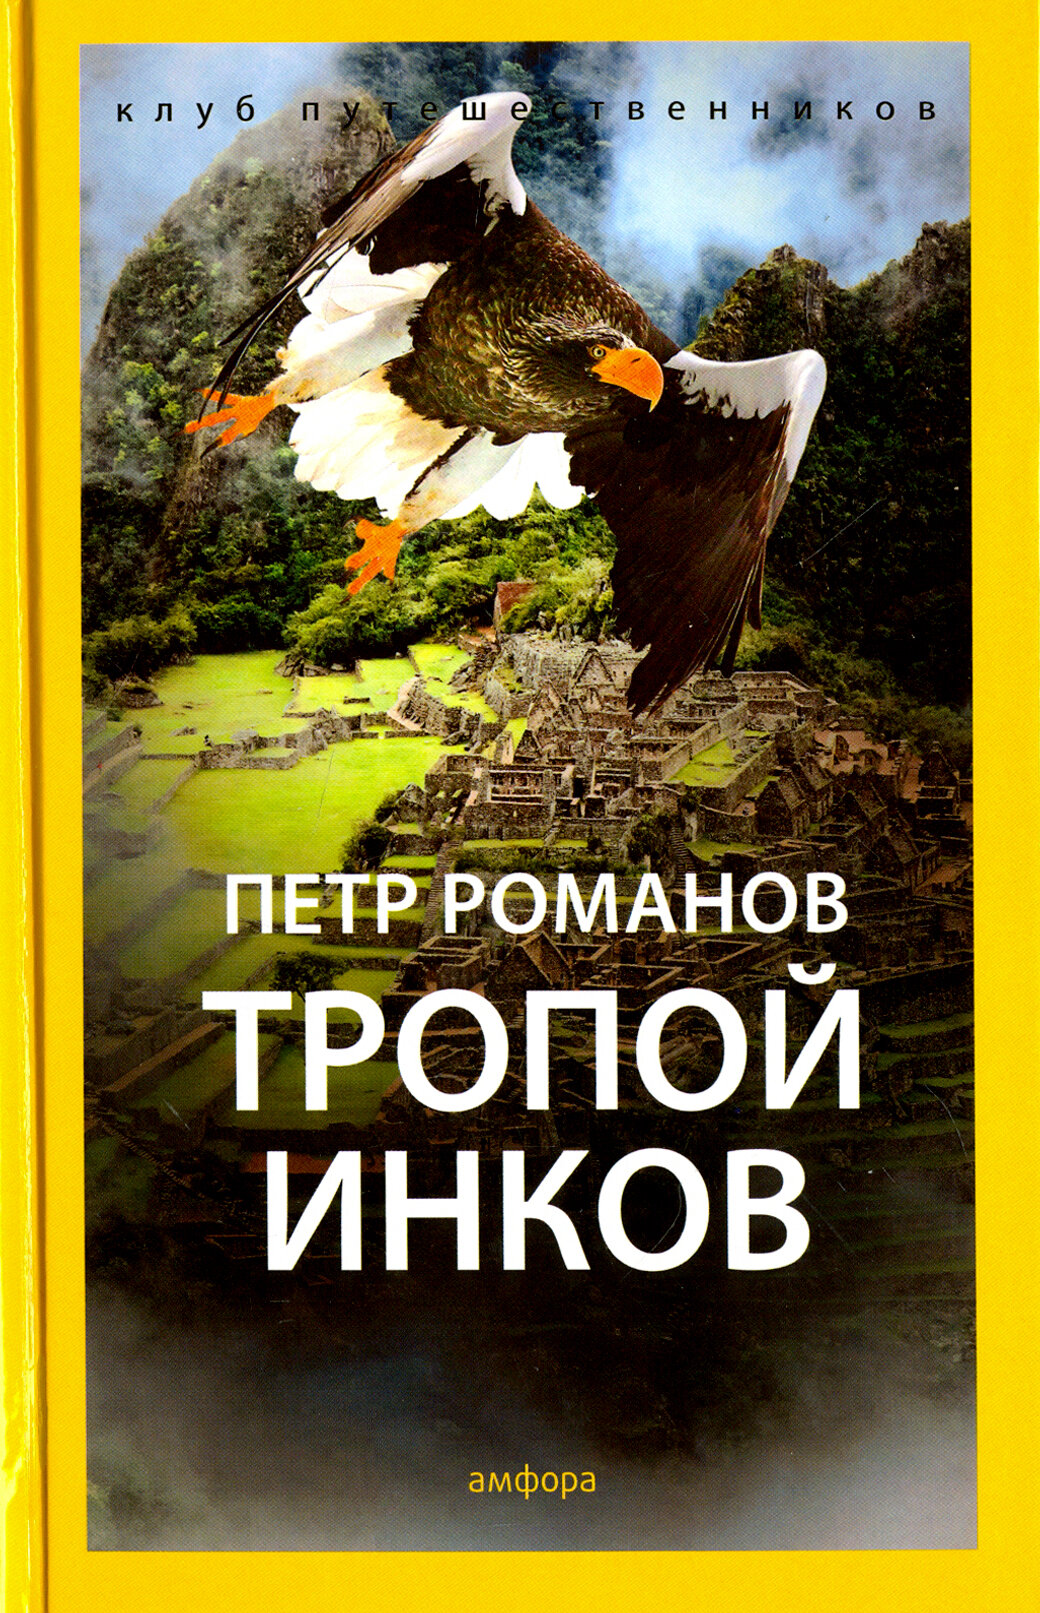 Книга Амфора Тропой инков. 2015 год, П. Романов